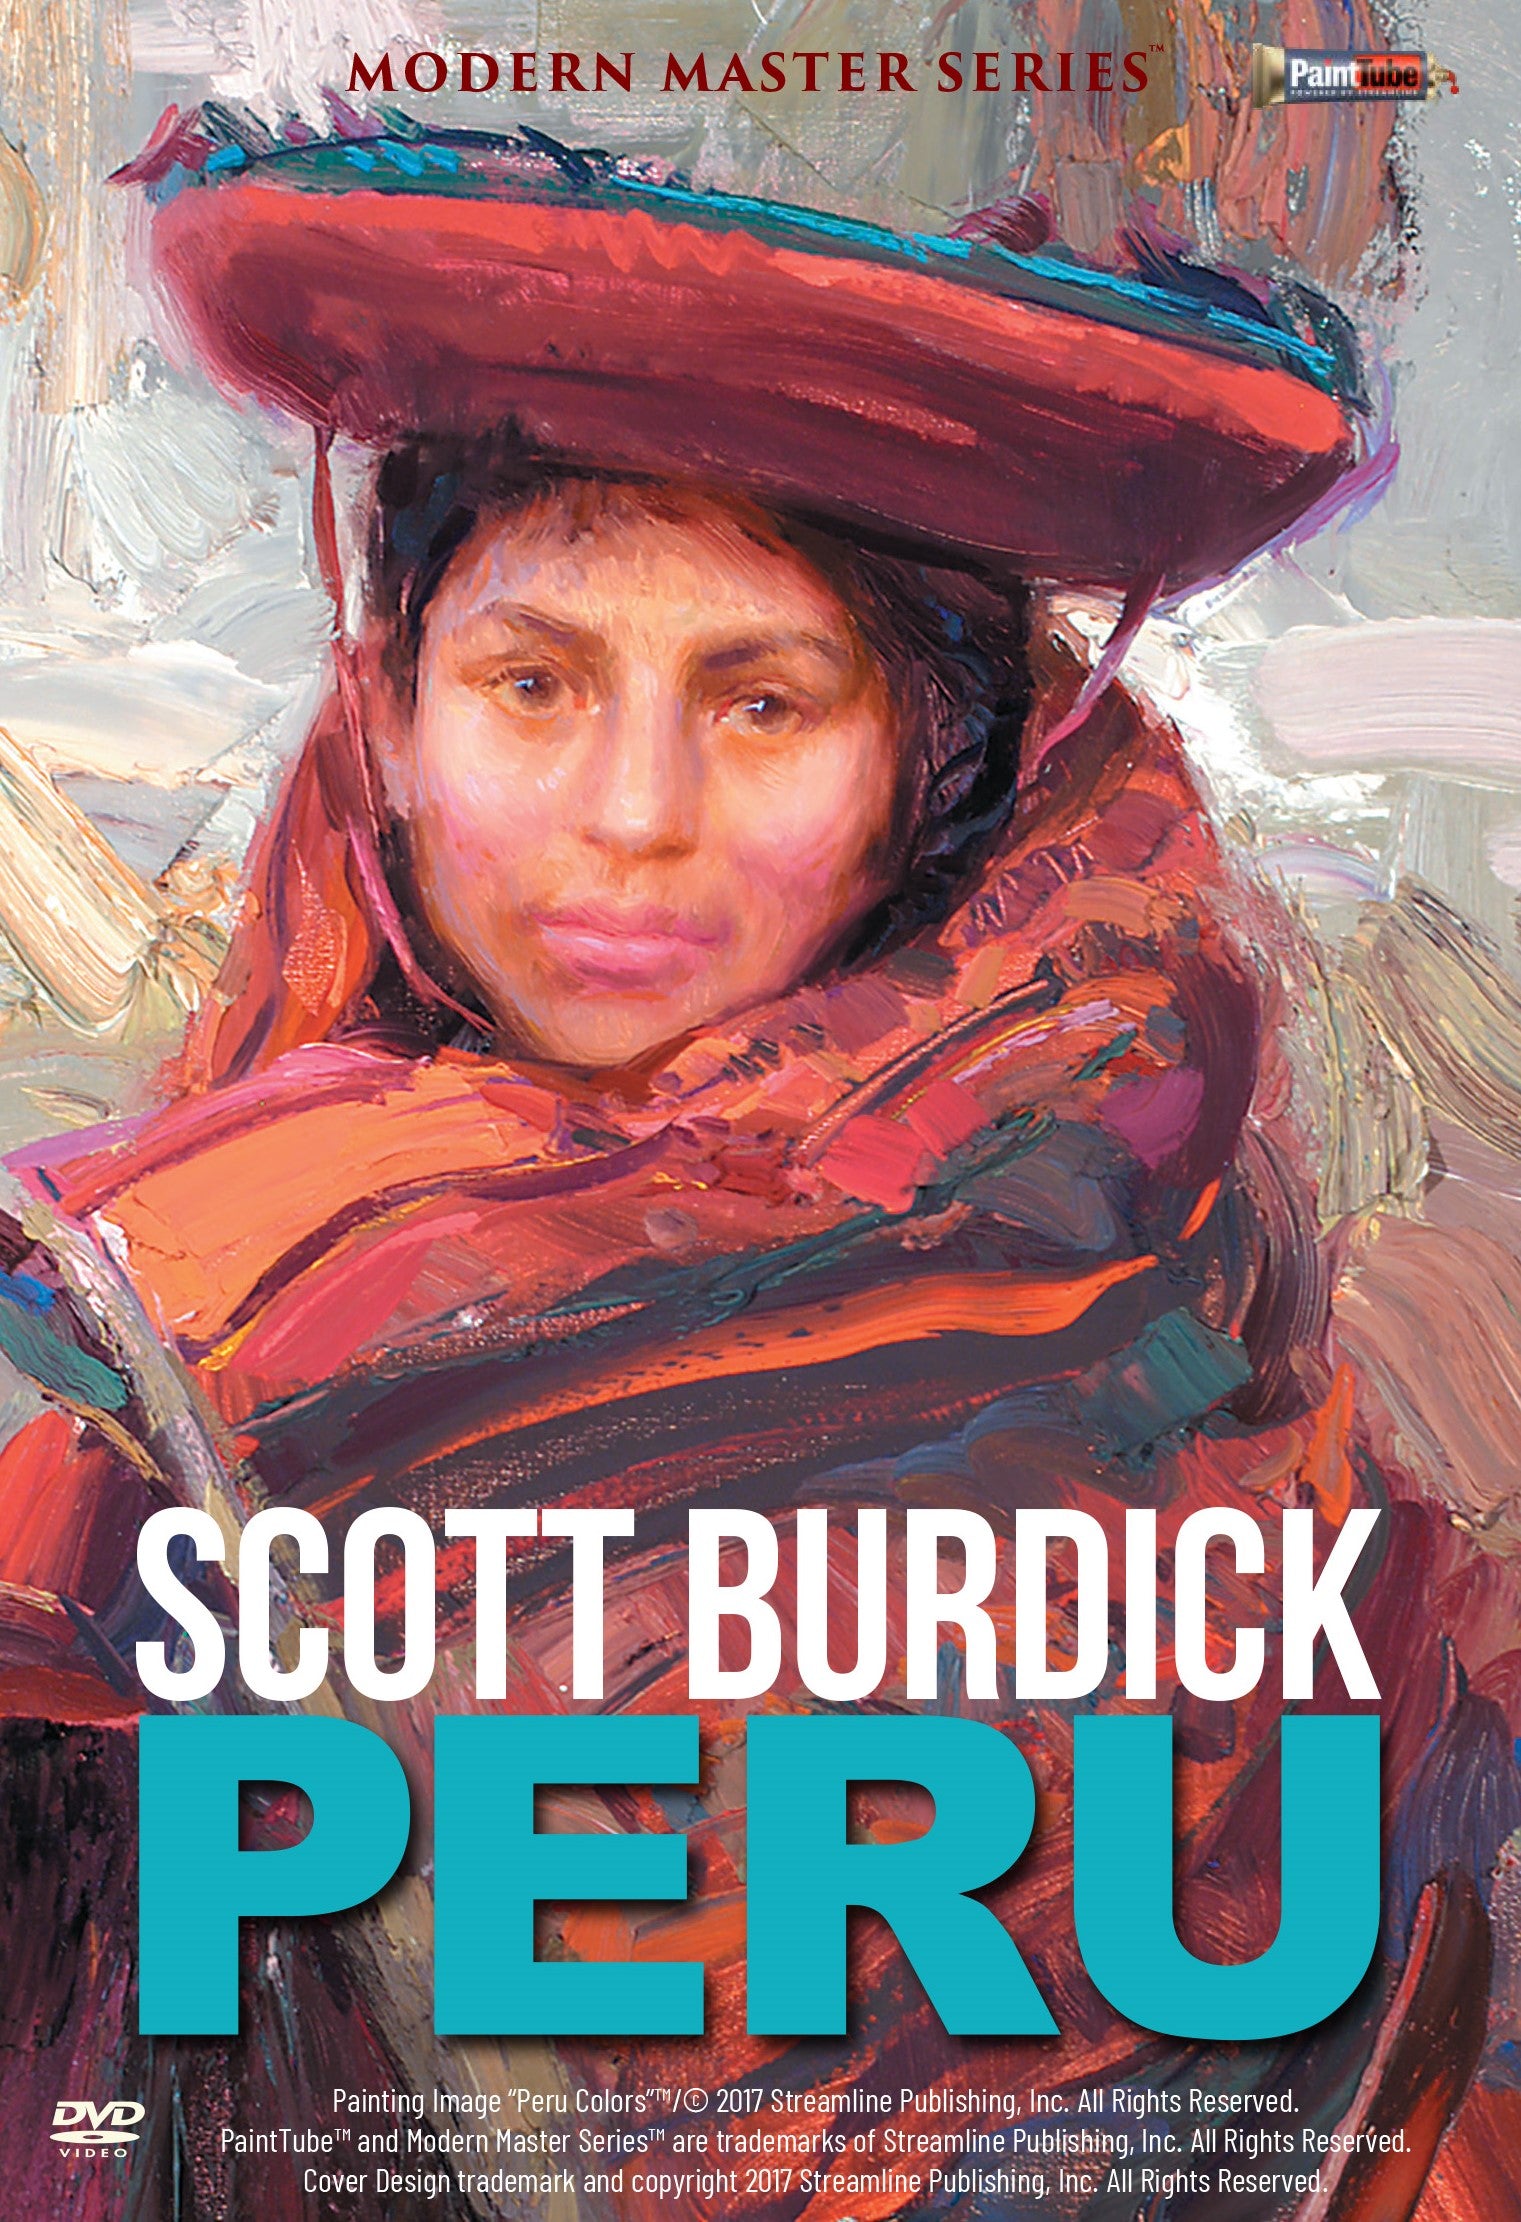 Scott Burdick: Peru Colors